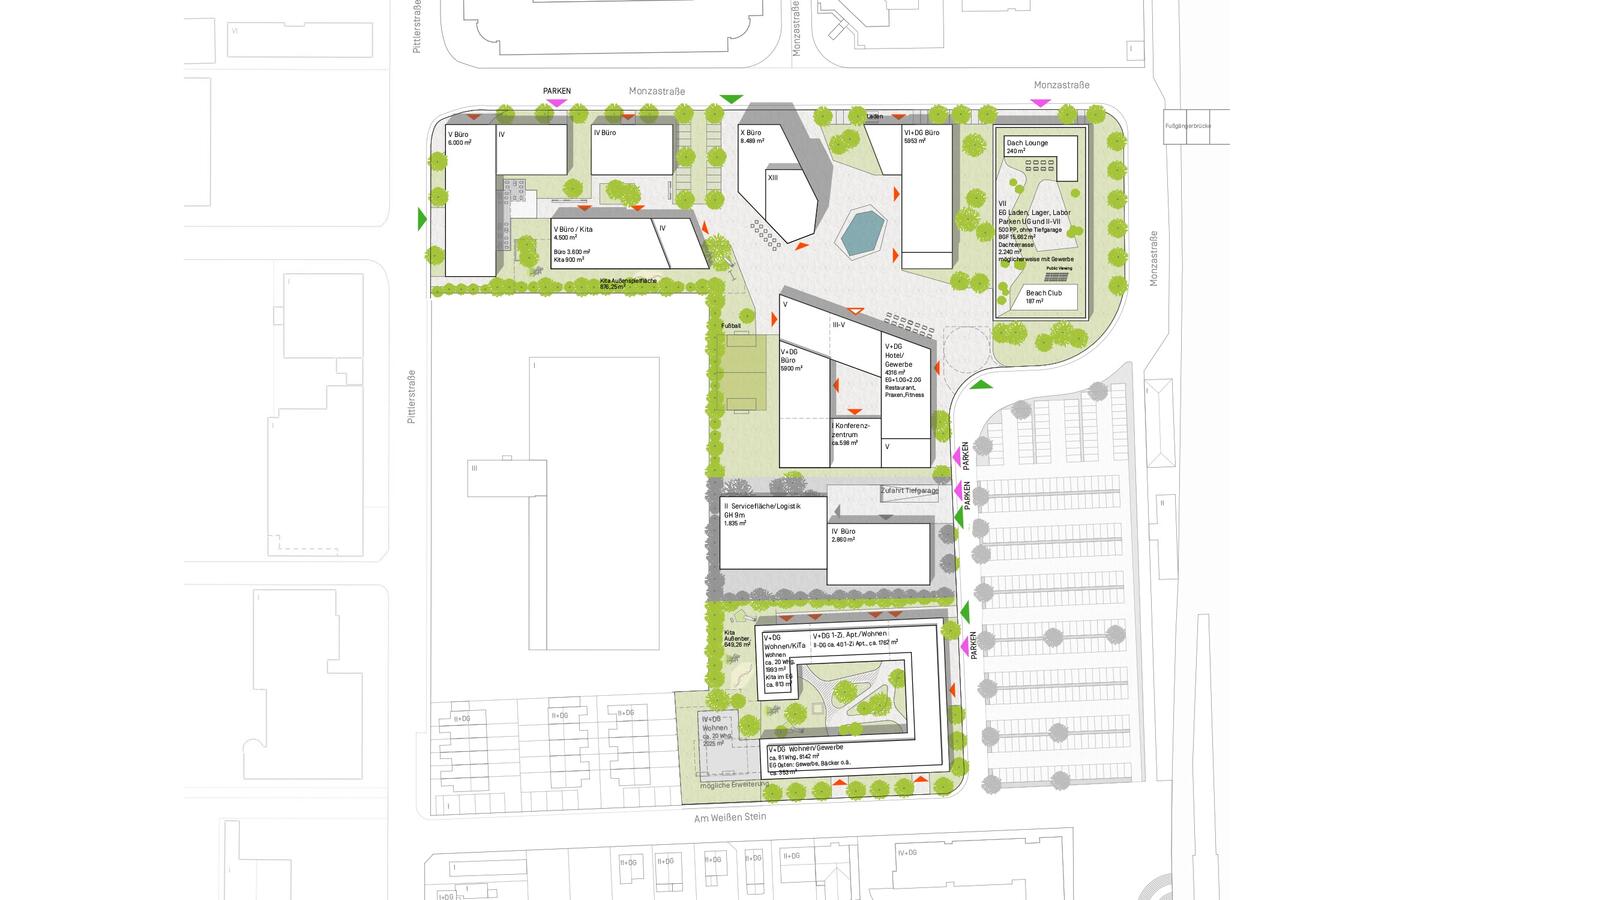 Büros, Wohnungen, Restaurants, Kitas, Sportbereiche und viel Grün haben zukünftig Platz auf dem Terrain des „Advancis Campus“. 